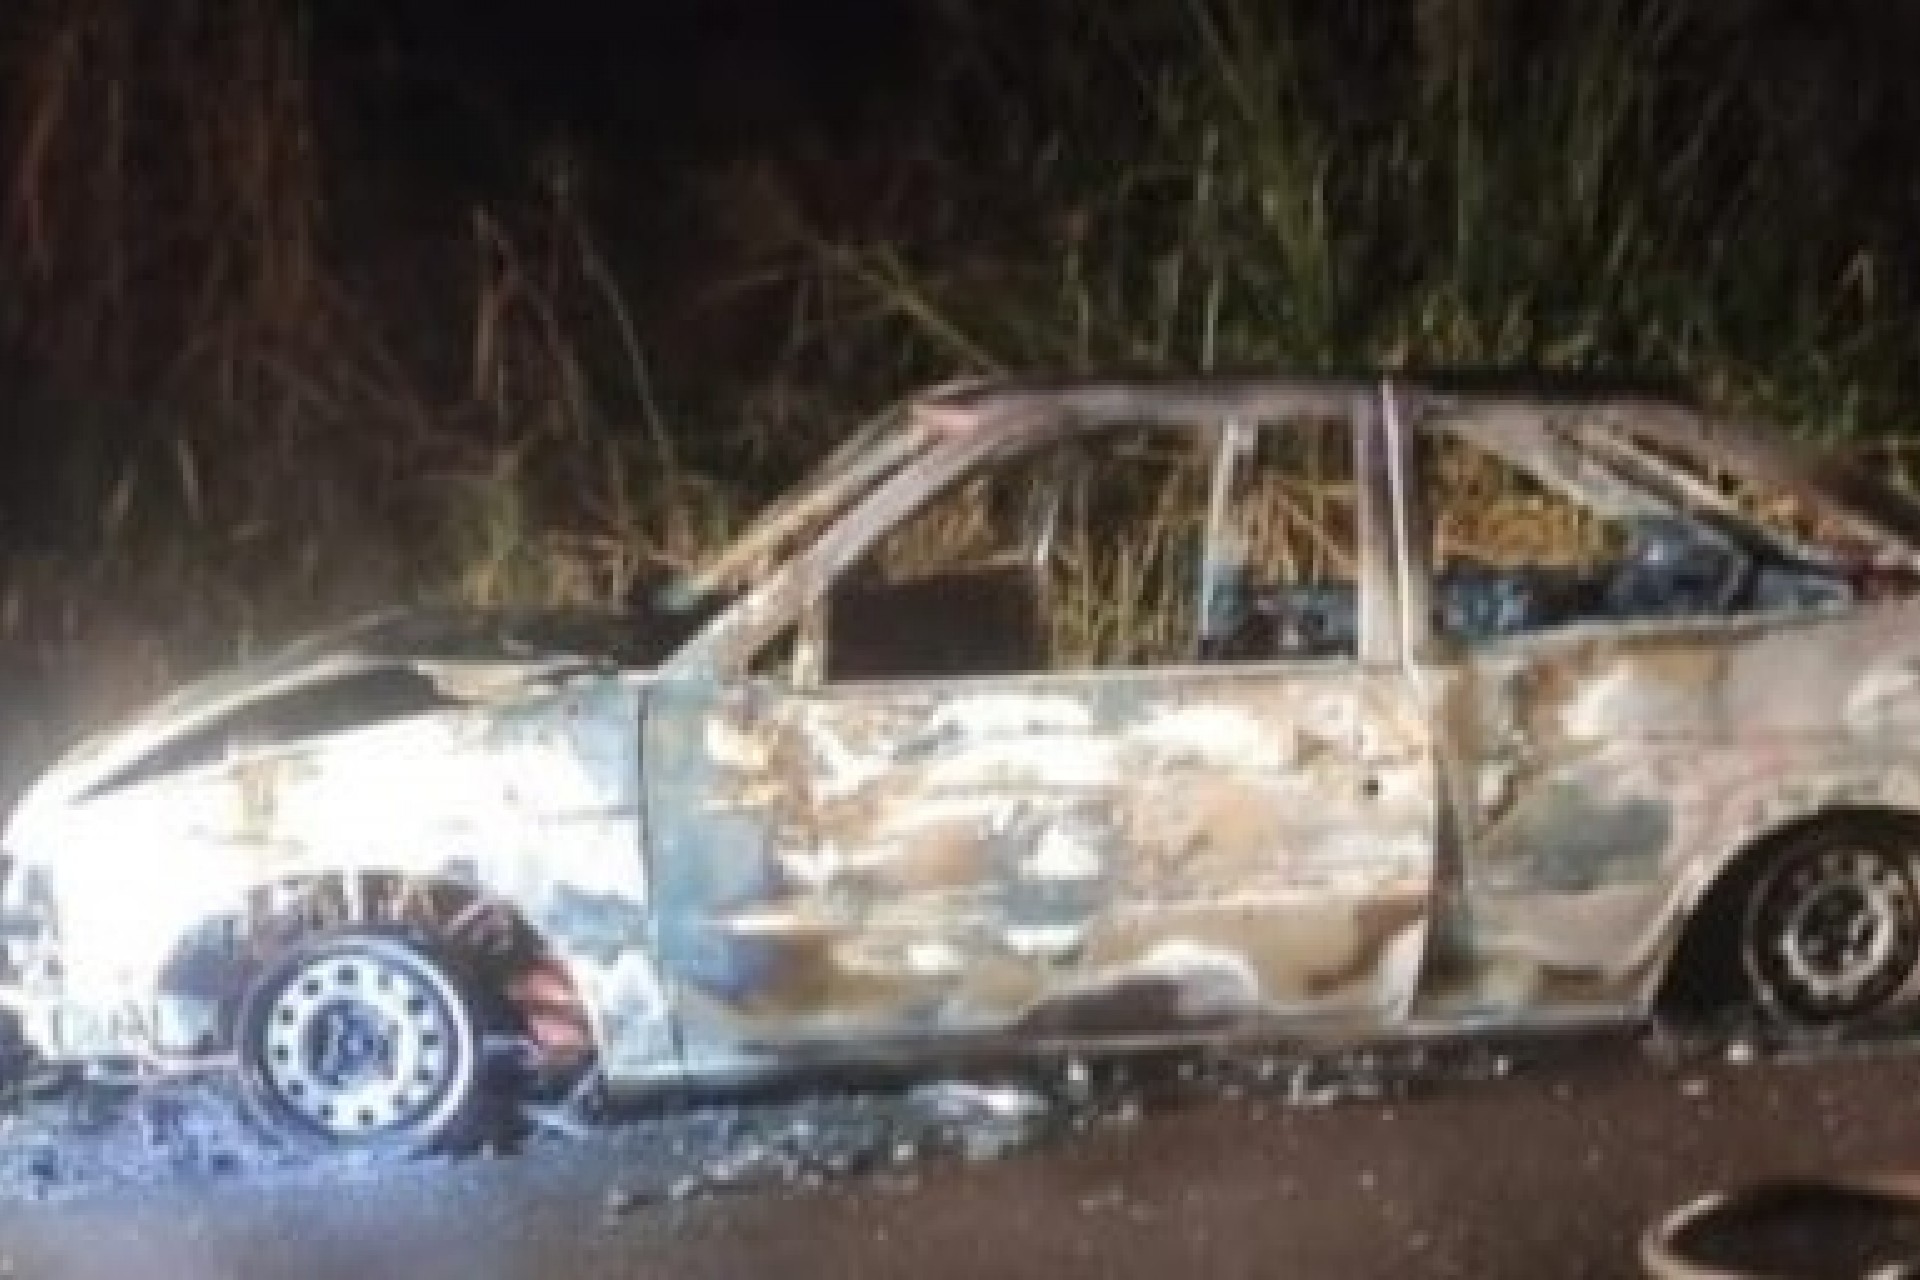 Mulher pega carona com o ex-marido, ateia fogo no carro e salta do veículo em movimento no Paraná